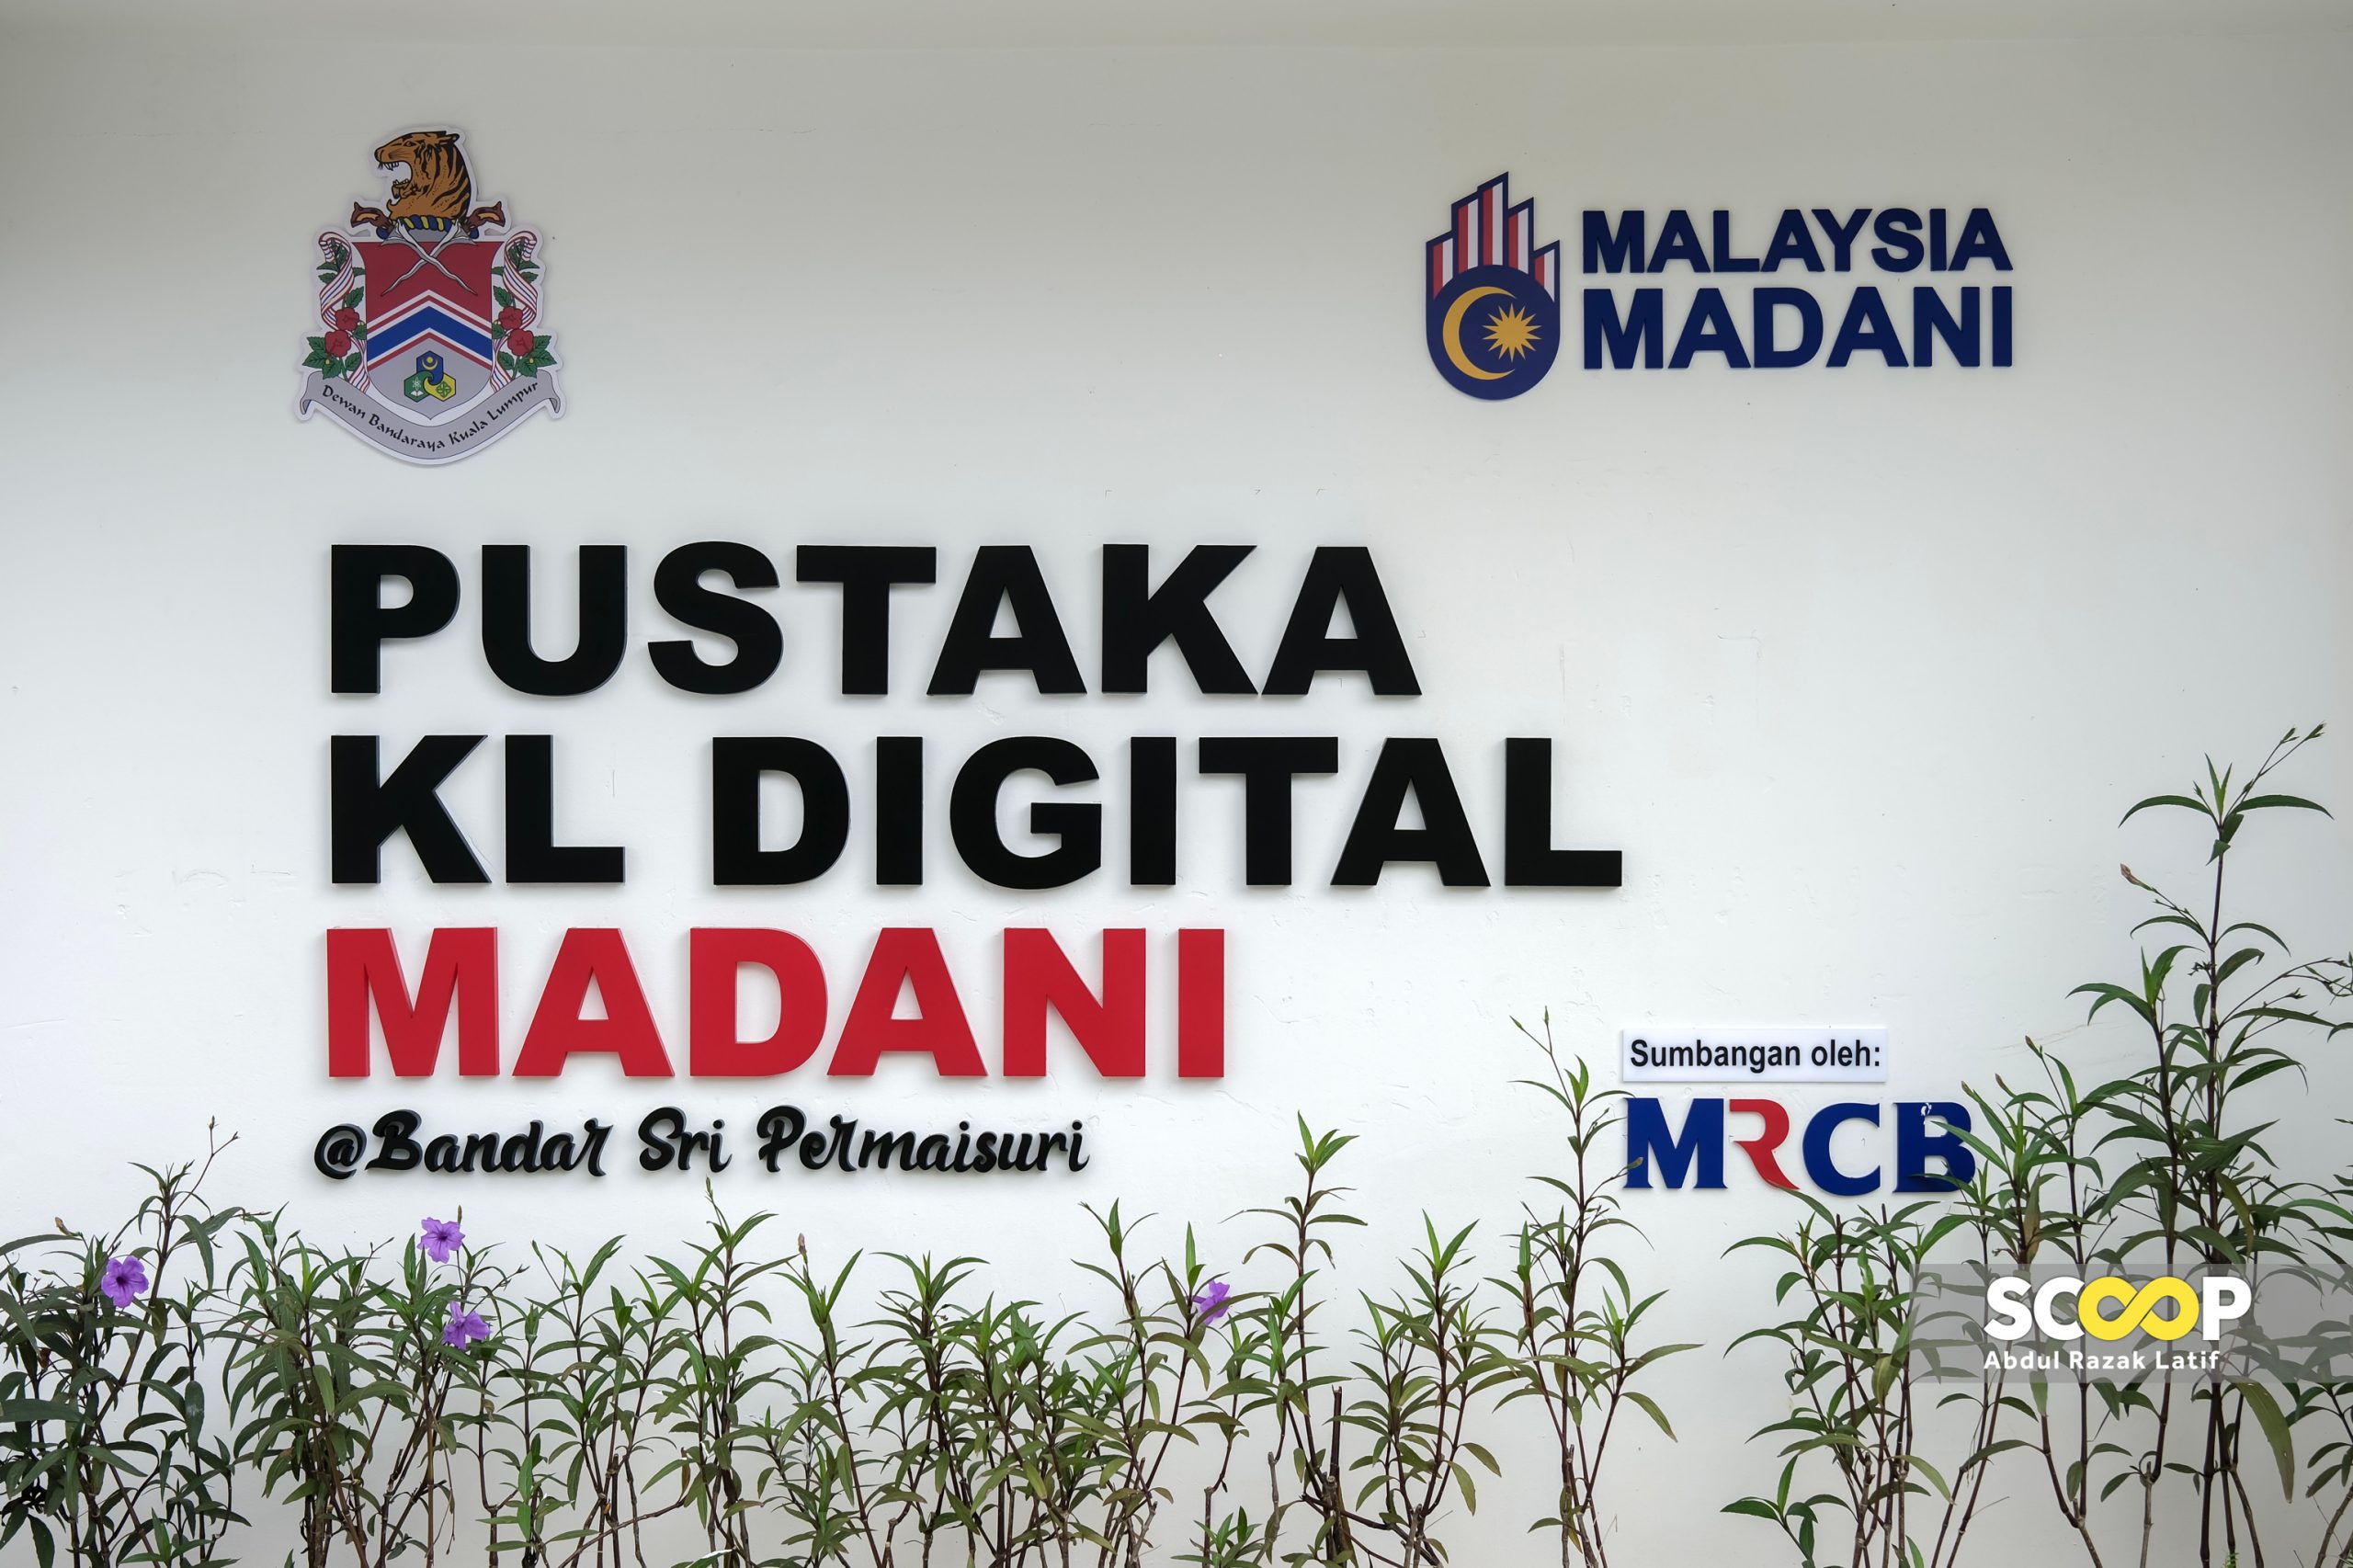 Pustaka KL Digital Madani lokasi keempat program kelas tuisyen percuma